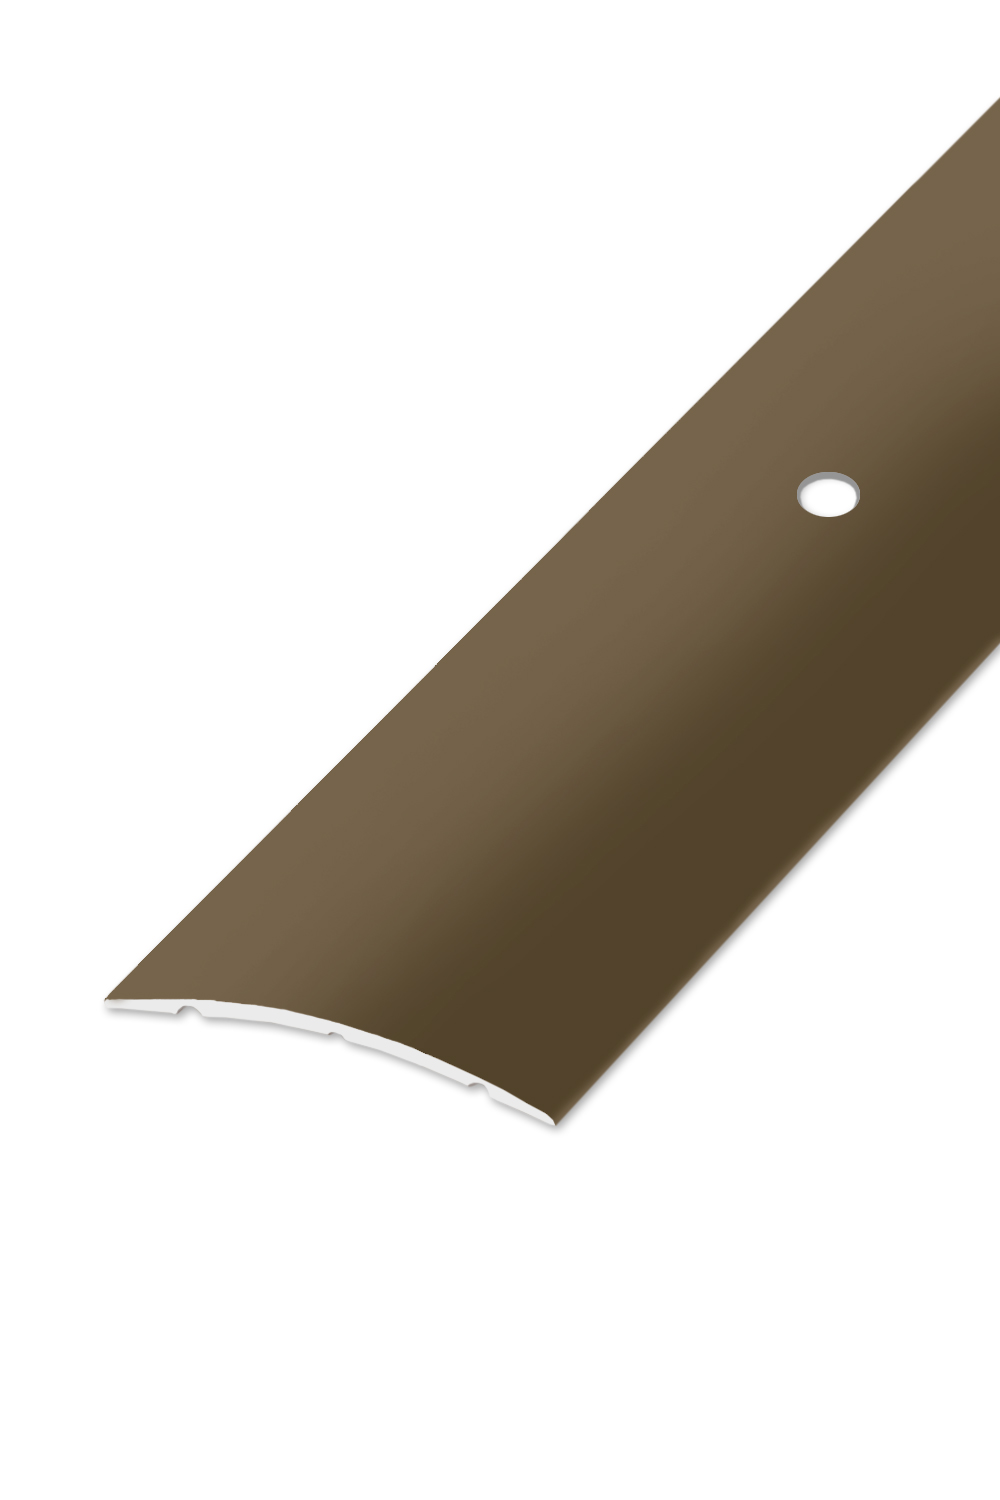 Přechodová lišta STANDARD 40 vrtaná - Bronz 270 cm